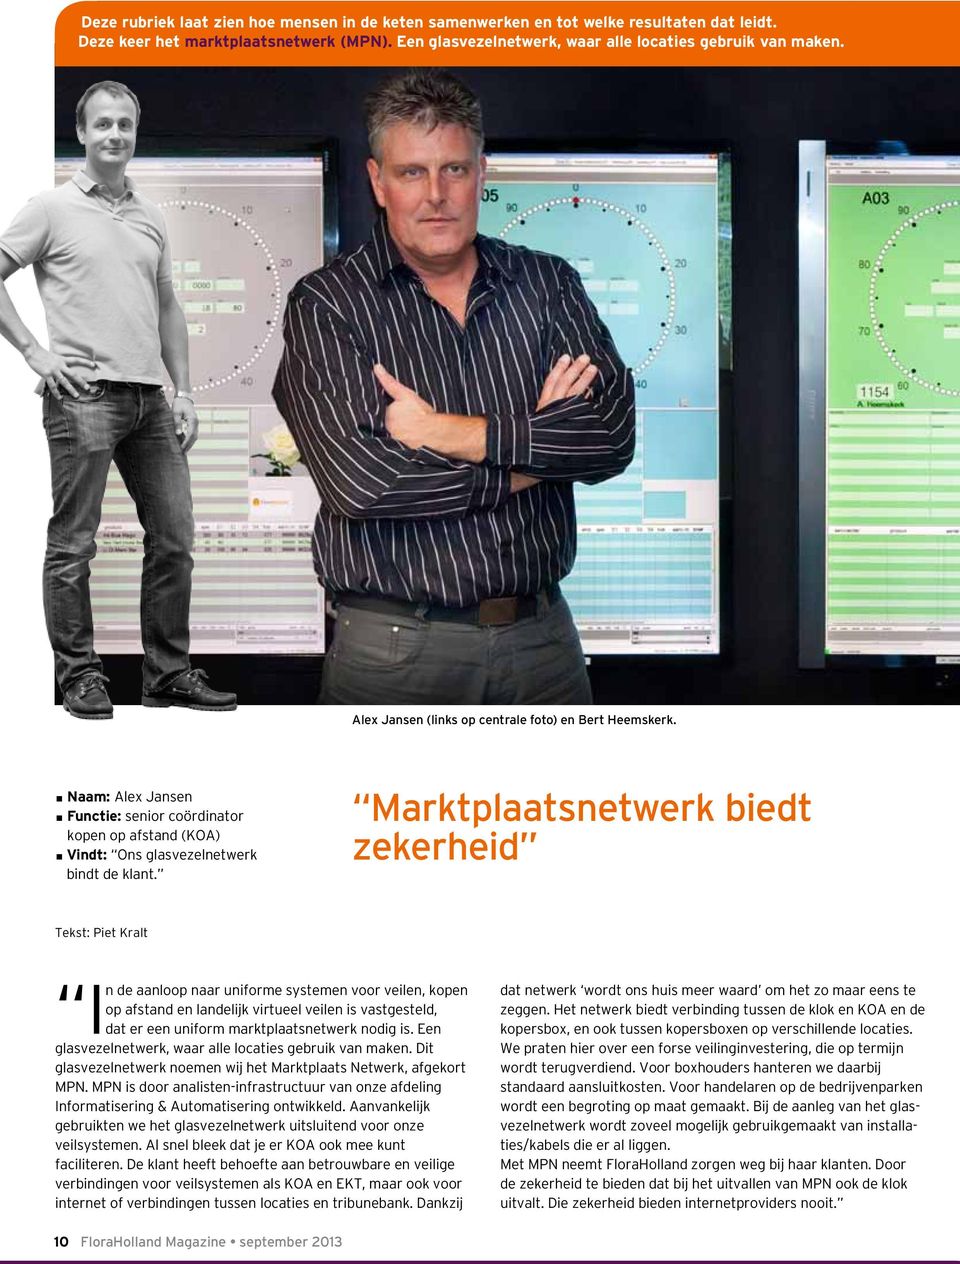 Marktplaatsnetwerk biedt zekerheid Tekst: Piet Kralt In de aanloop naar uniforme systemen voor veilen, kopen op afstand en landelijk virtueel veilen is vastgesteld, dat er een uniform